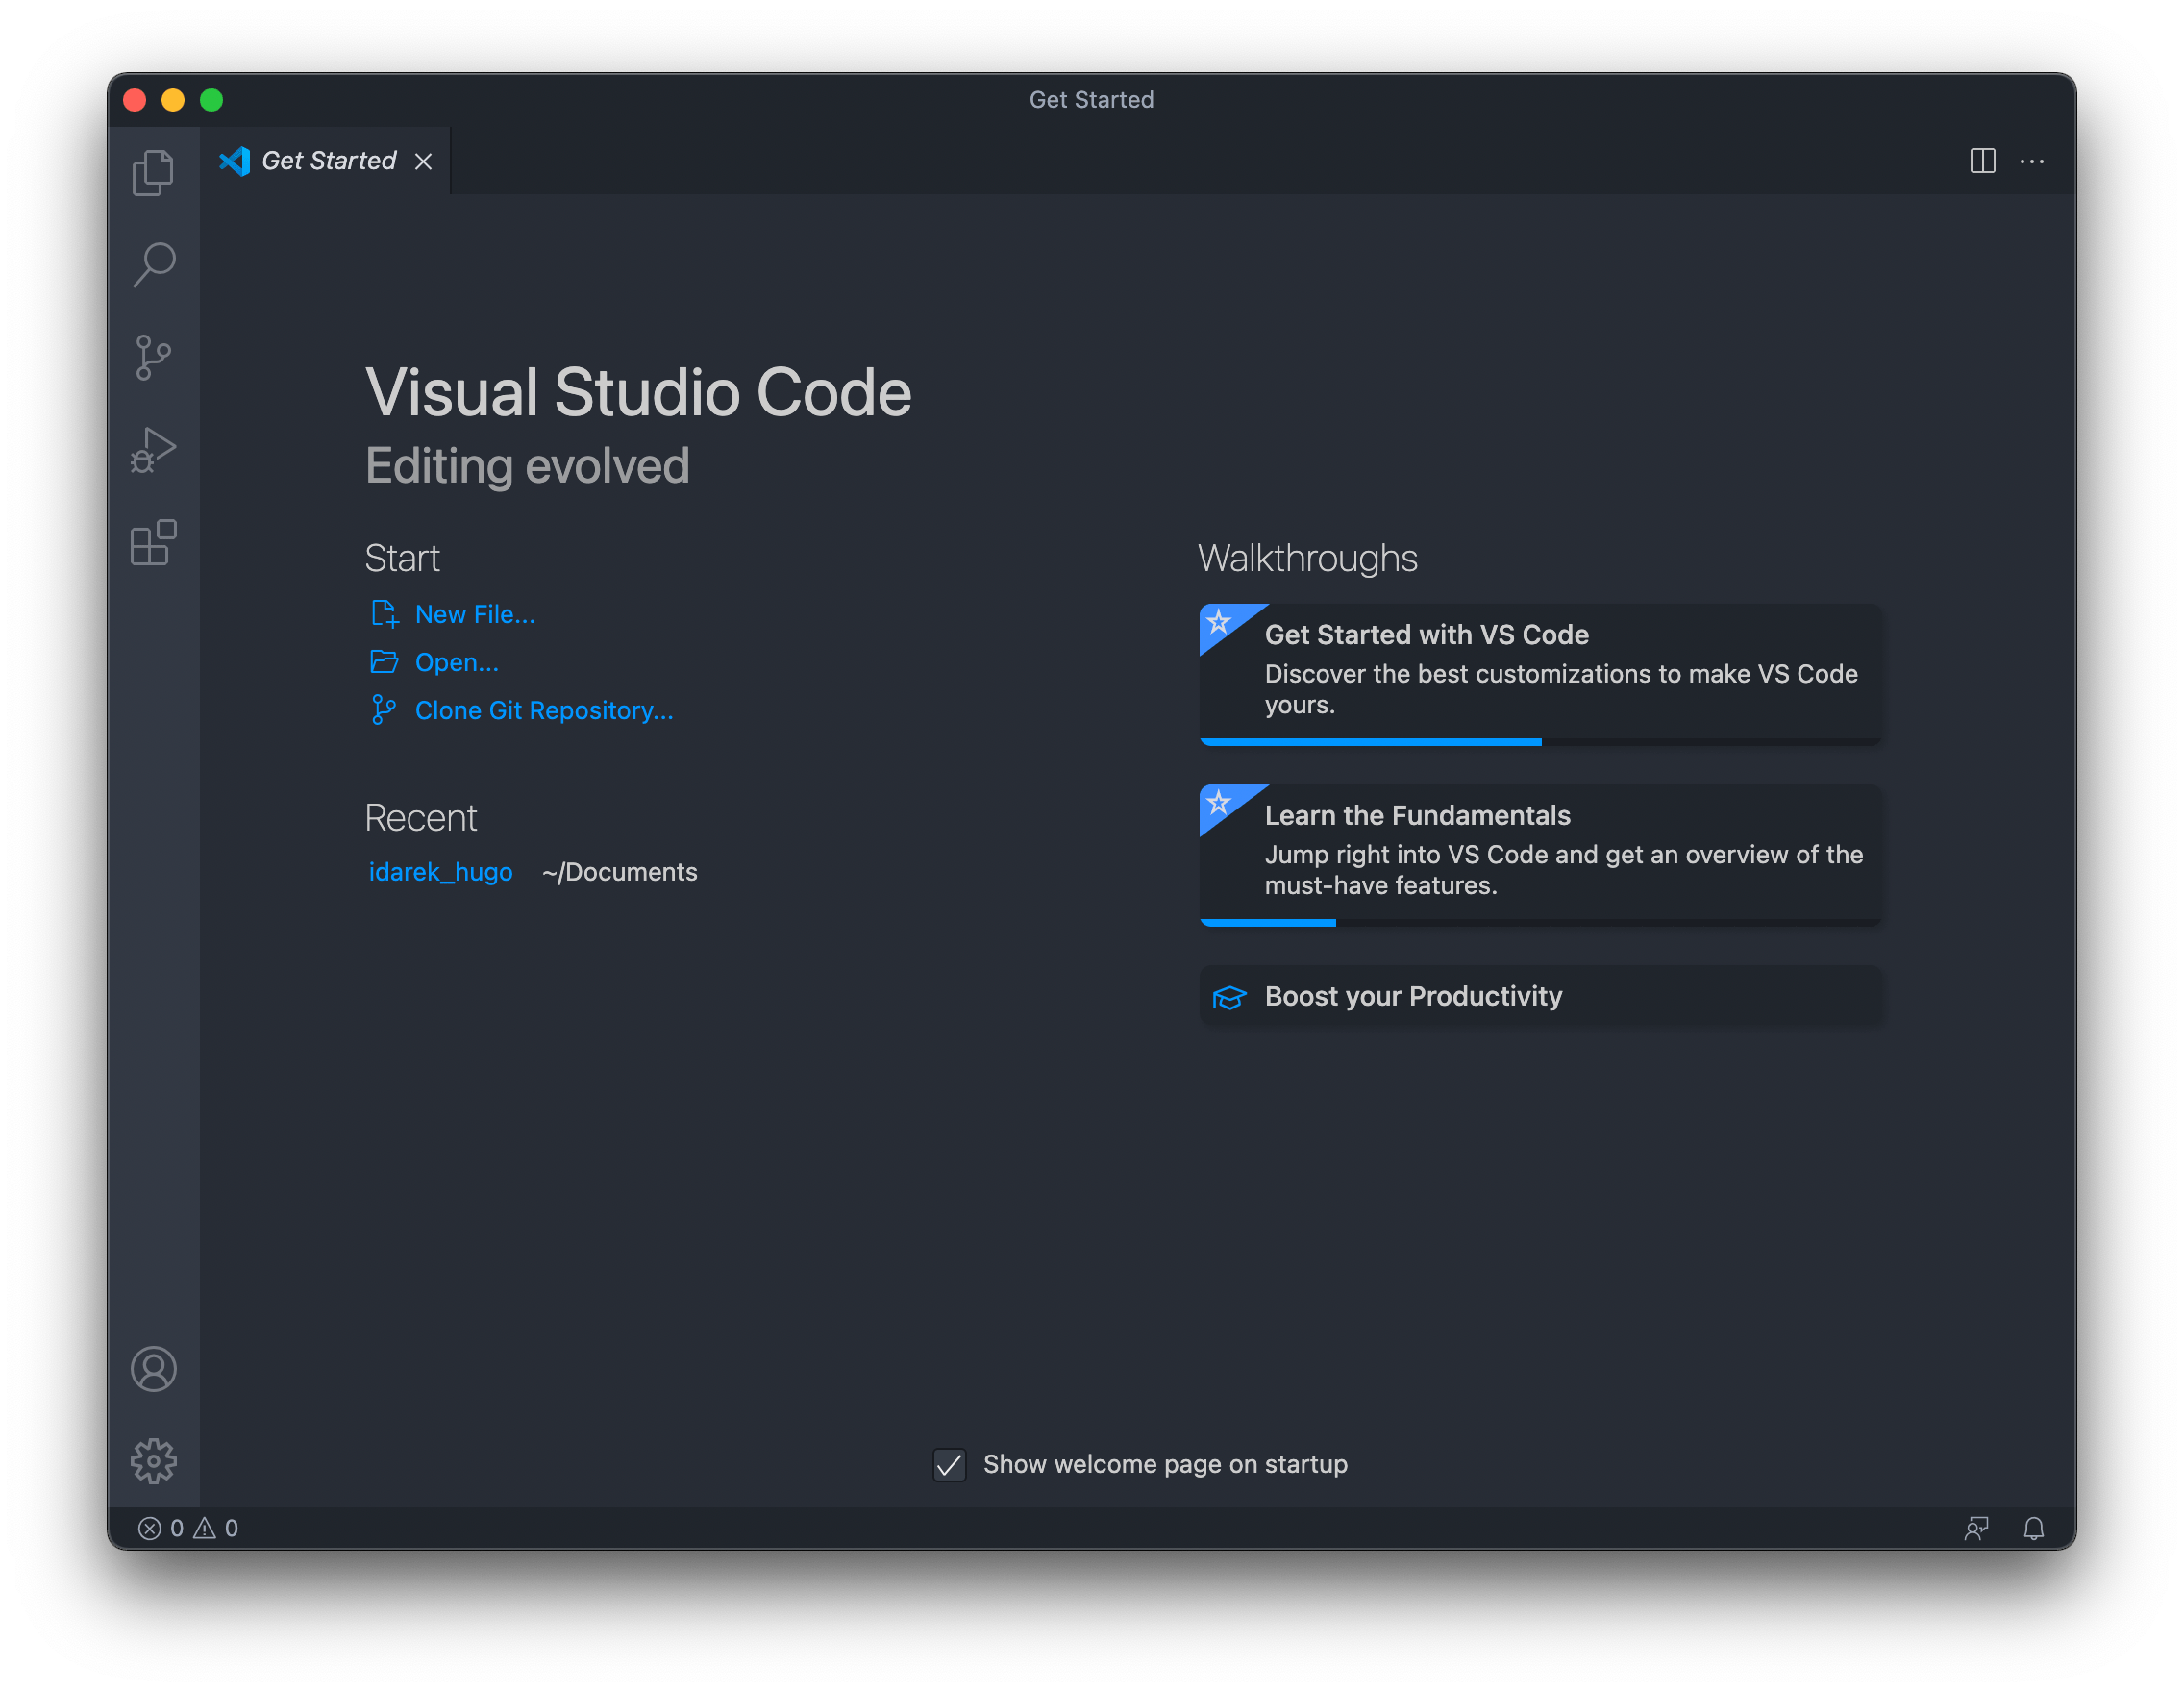 Visual Studio Code – Start